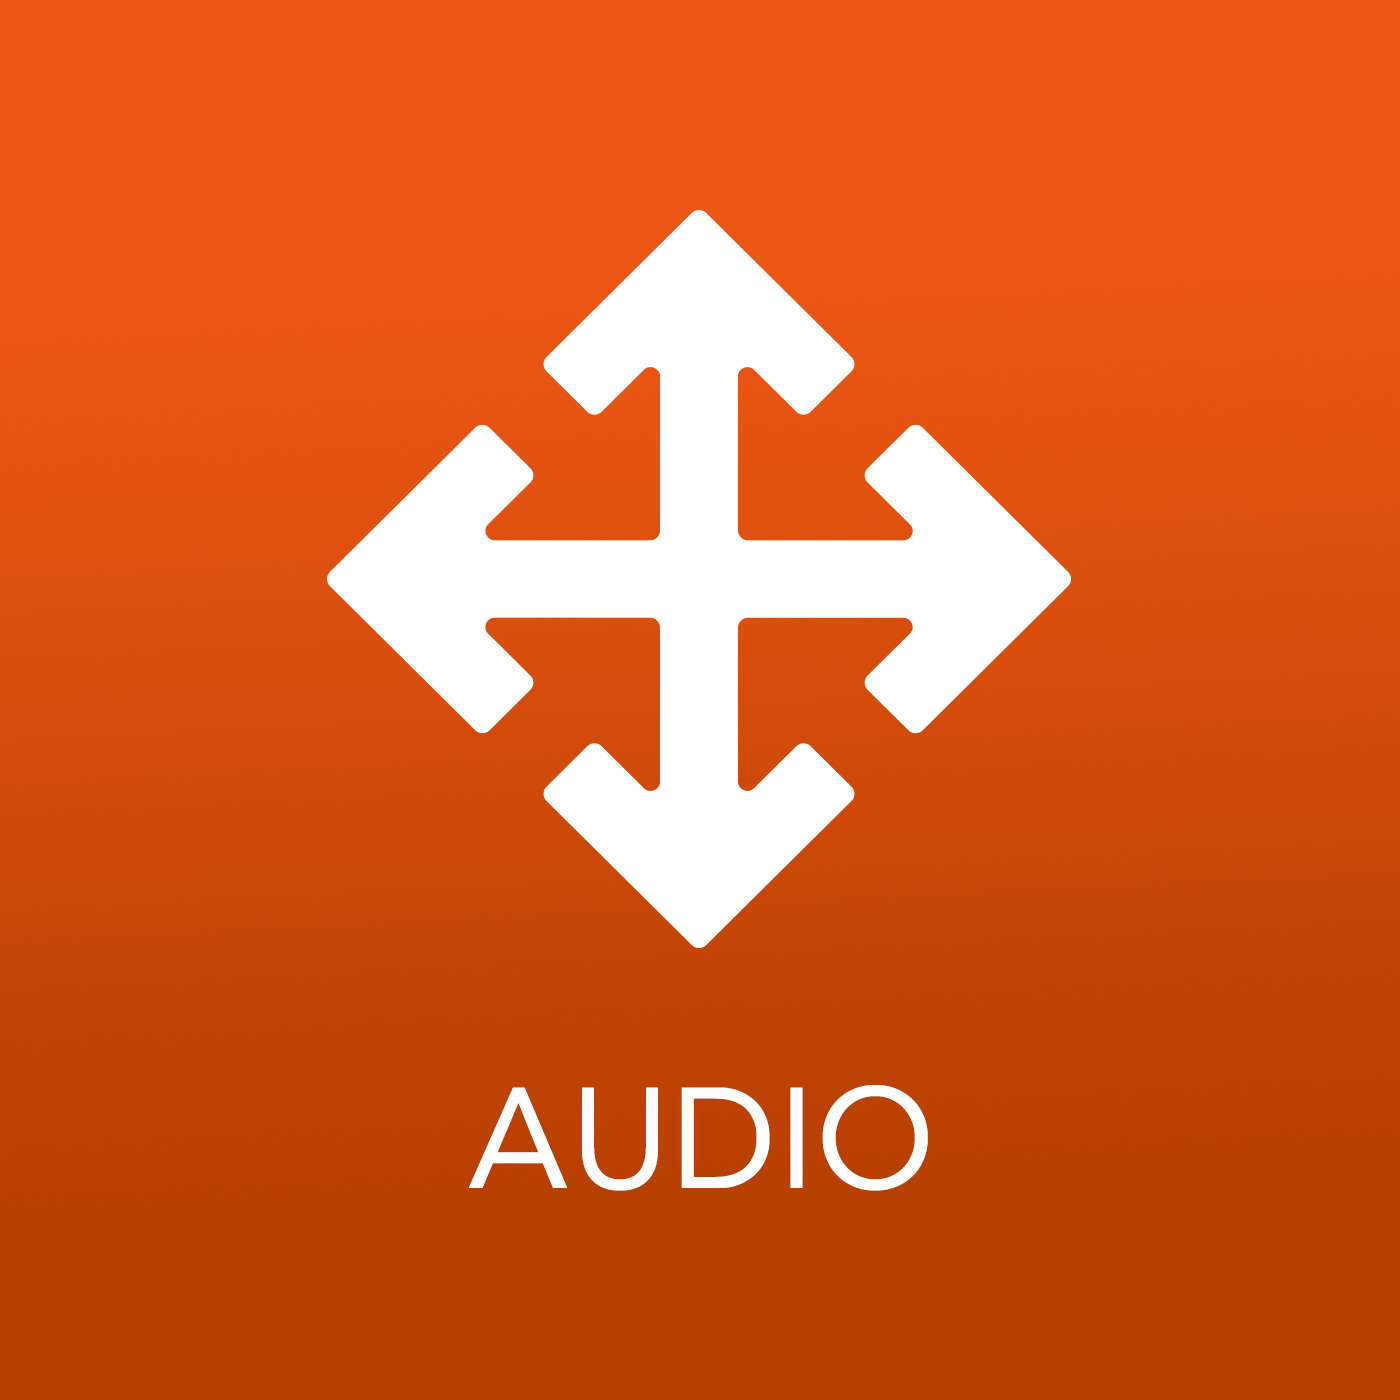 The Chapel Buffalo Audio Podcast